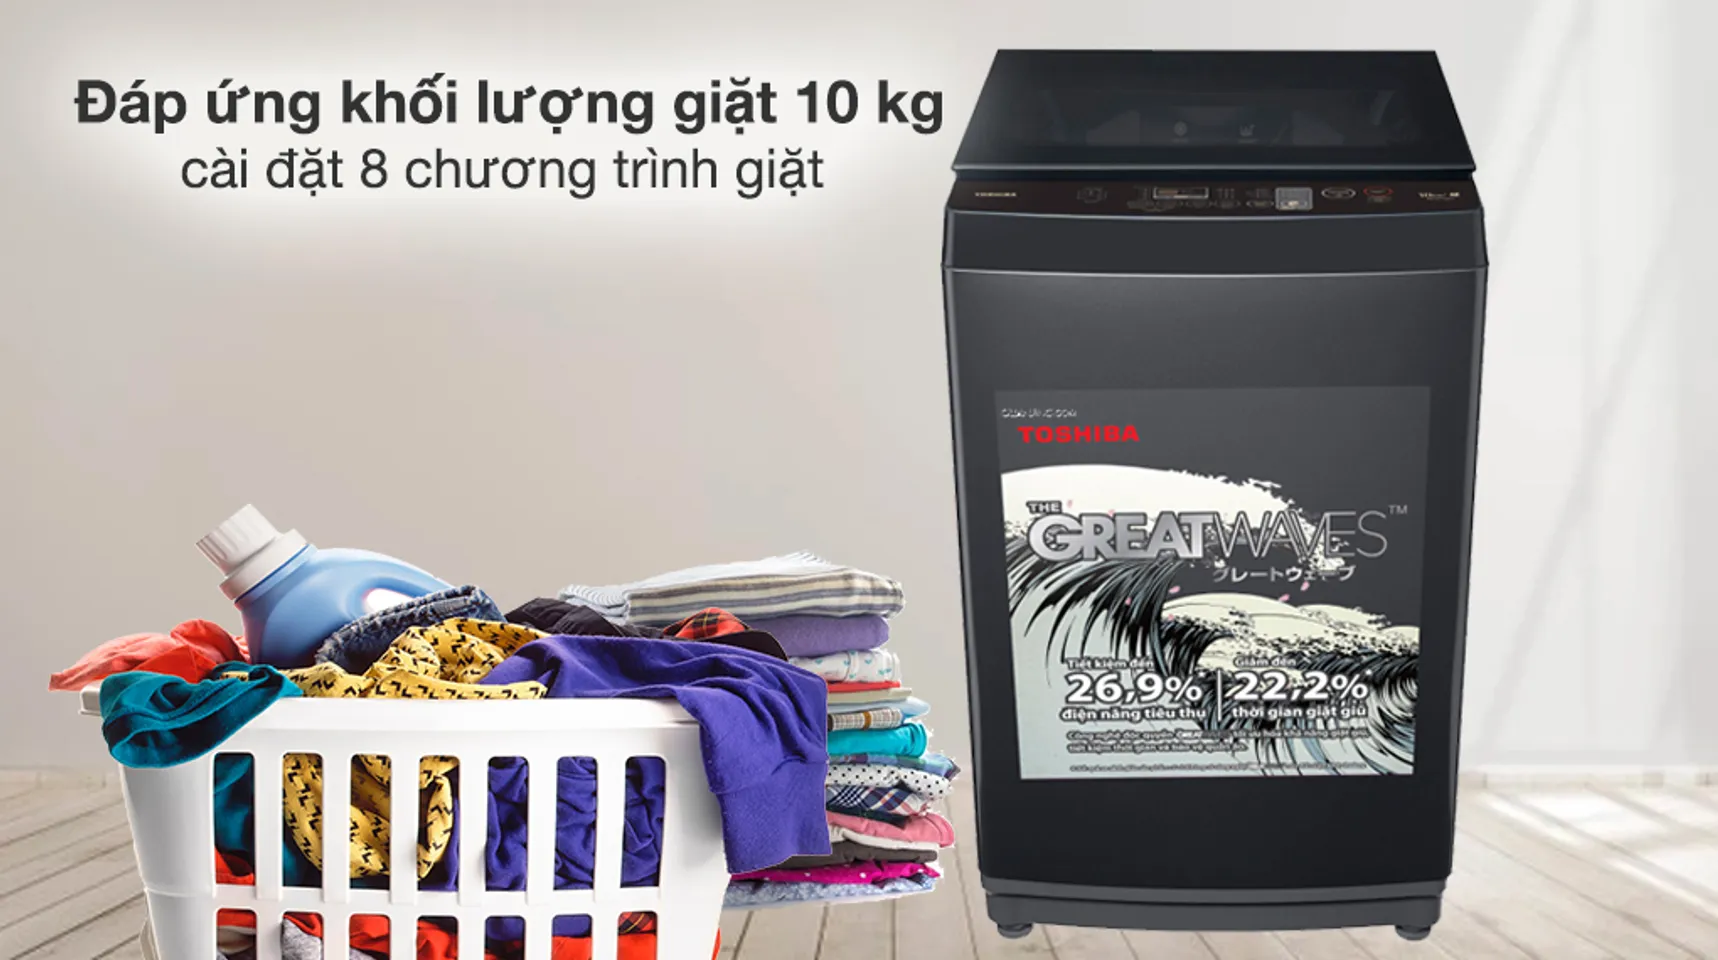 Máy giặt Toshiba 10 kg AW-M1100PV(MK) - Khối lượng giặt và chương trình giặt